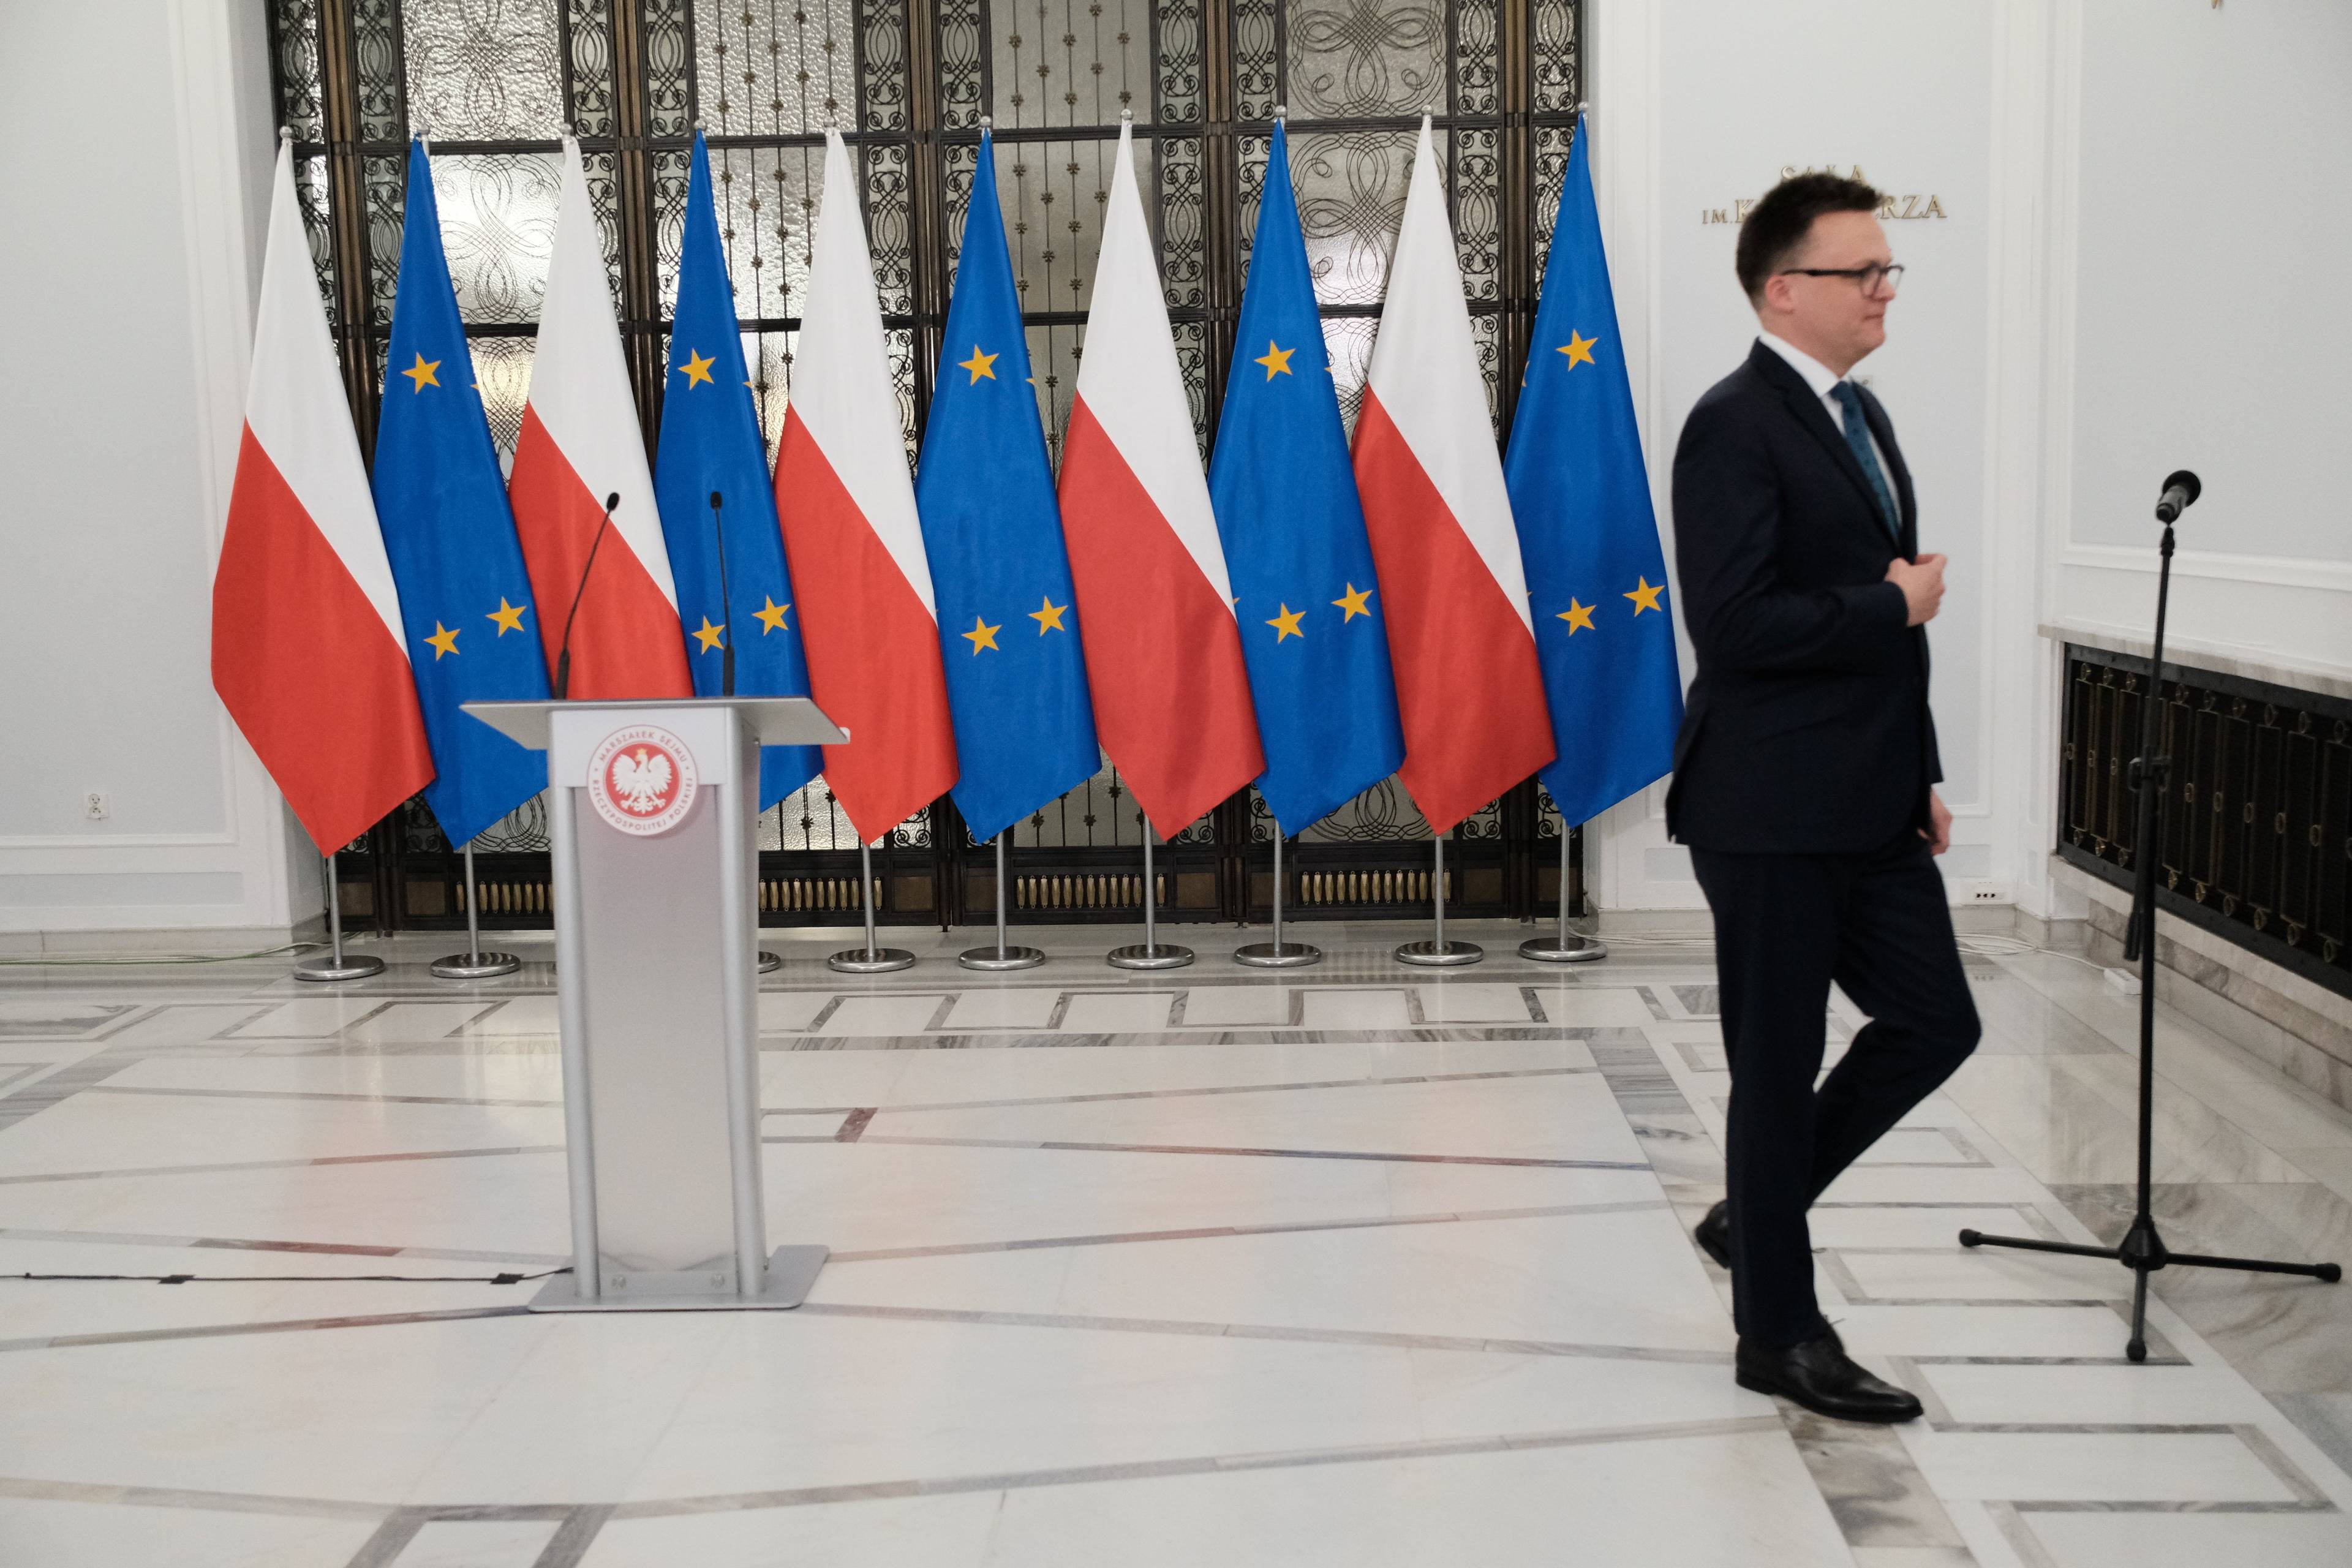 Szymon Hołownia wychodzi z sali po zakończeniu pierwszej konferencji prasowej jako marszałek Sejmu, w tle polskie i unijne flagi